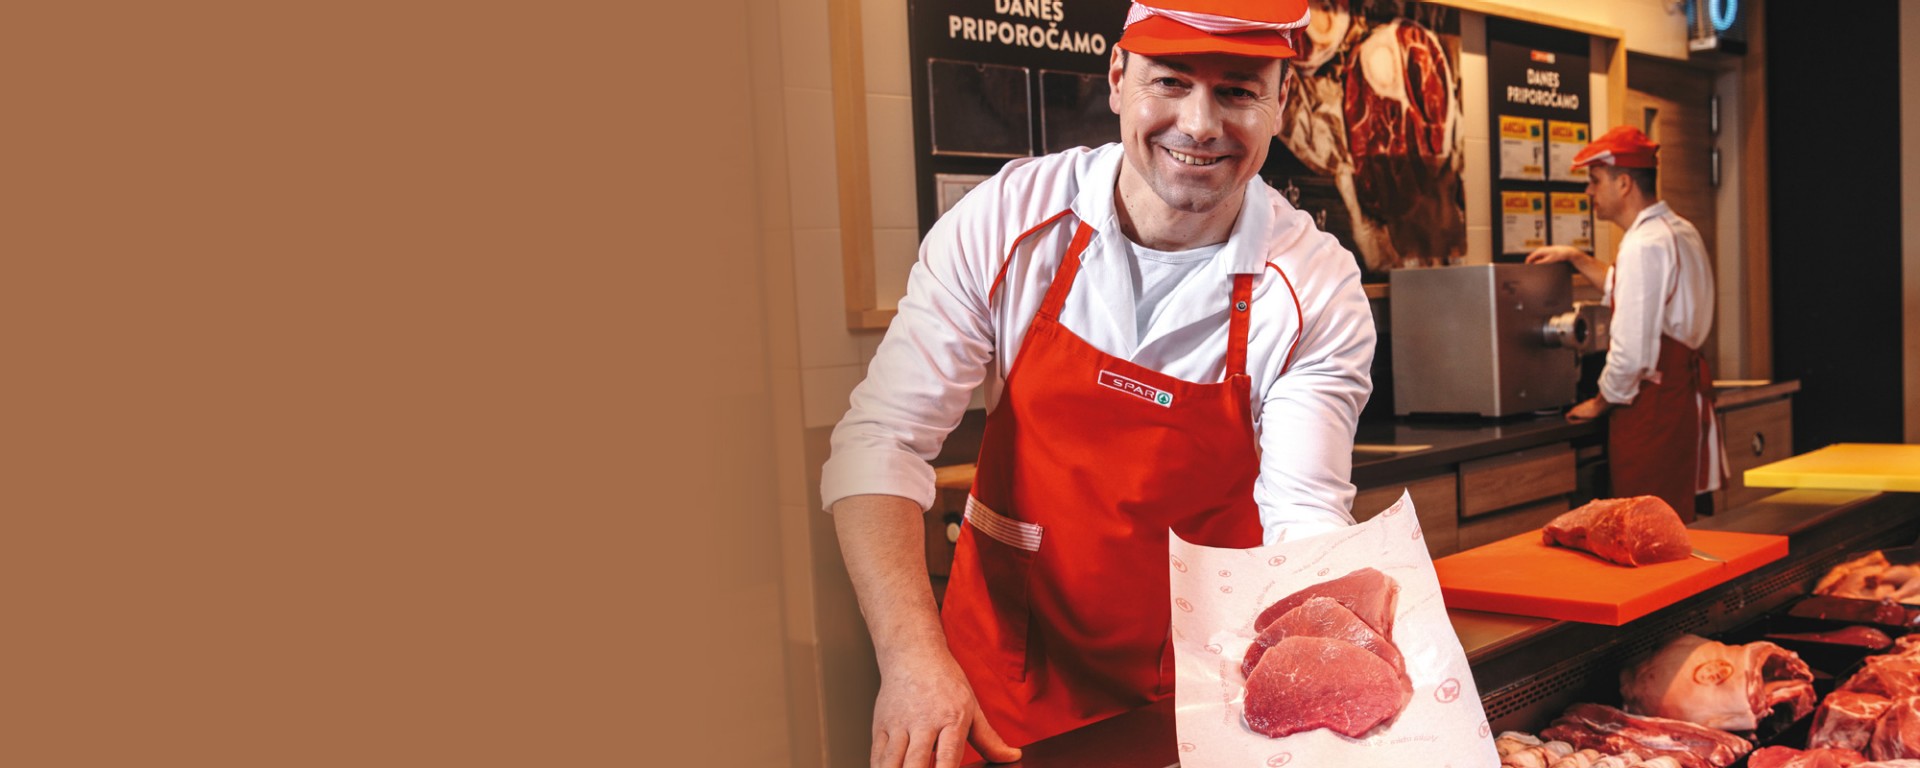 Sparova mesnica, po kakovostno meso se splača v SPAR, mesar